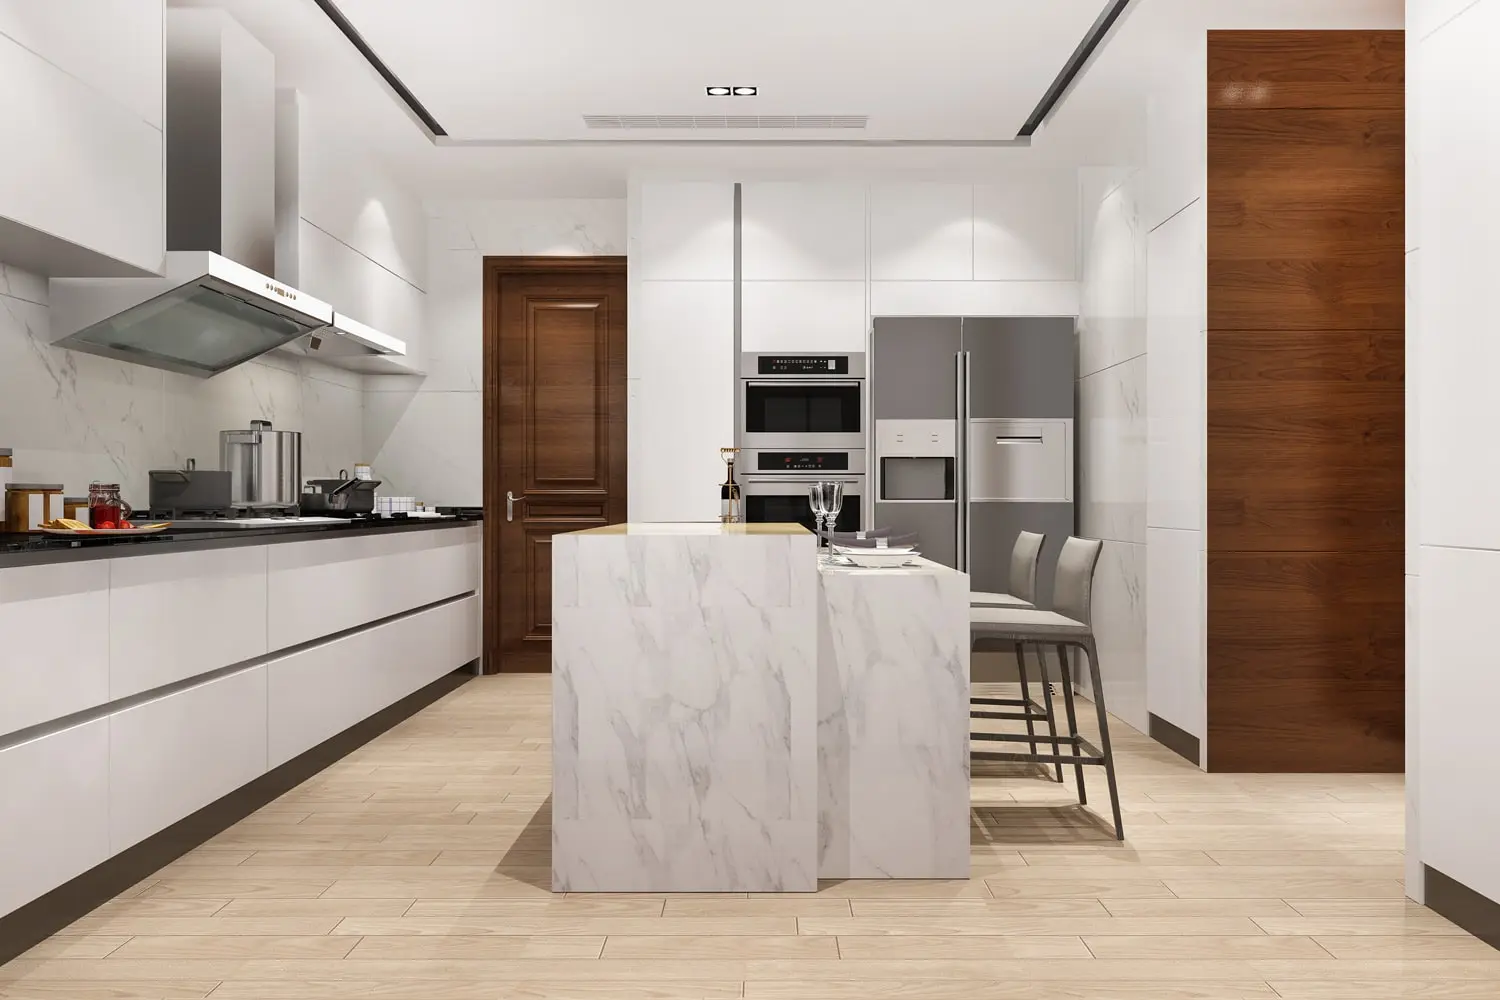 Modular kitchen design